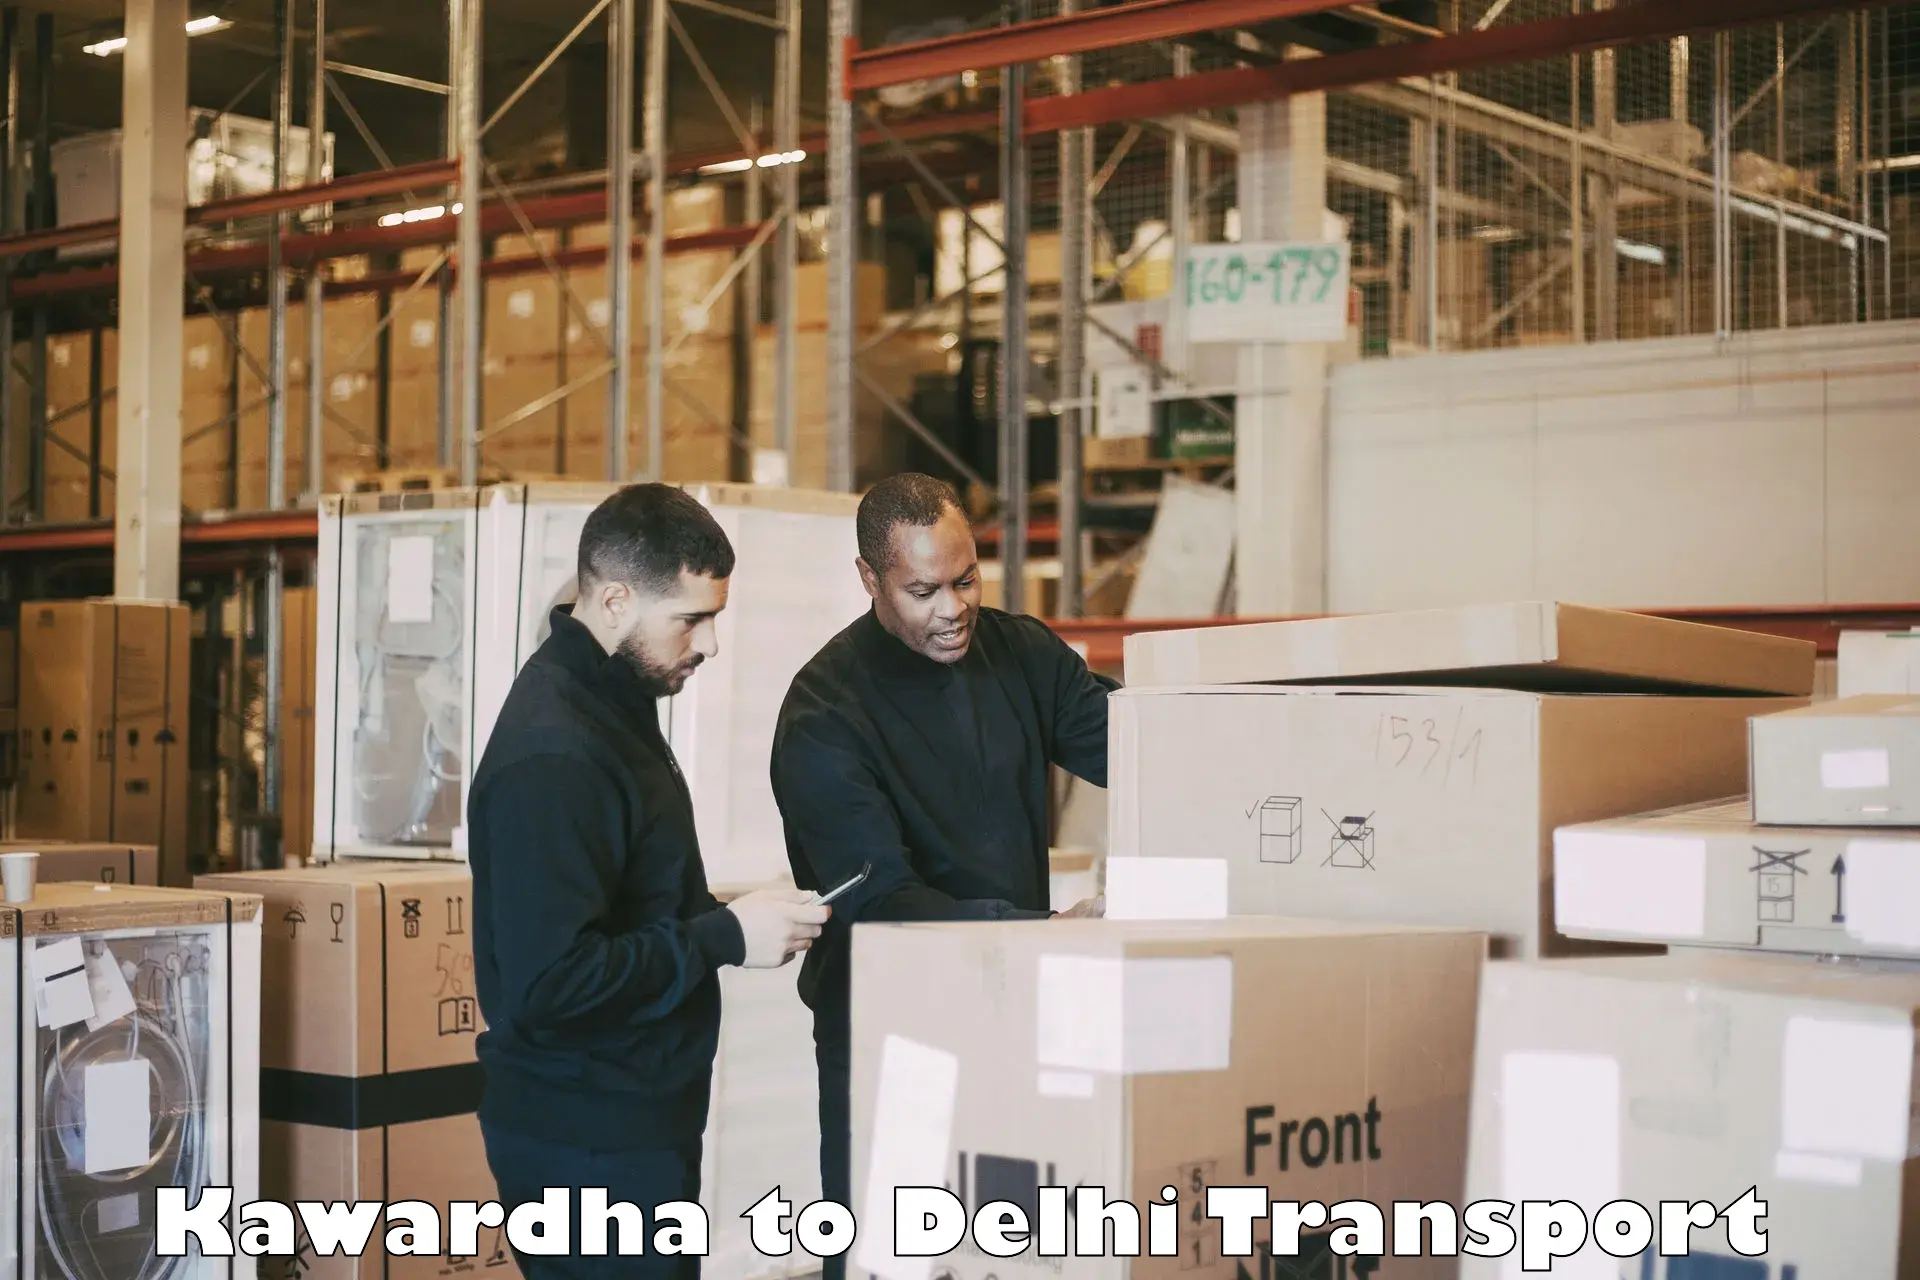 Shipping partner Kawardha to IIT Delhi